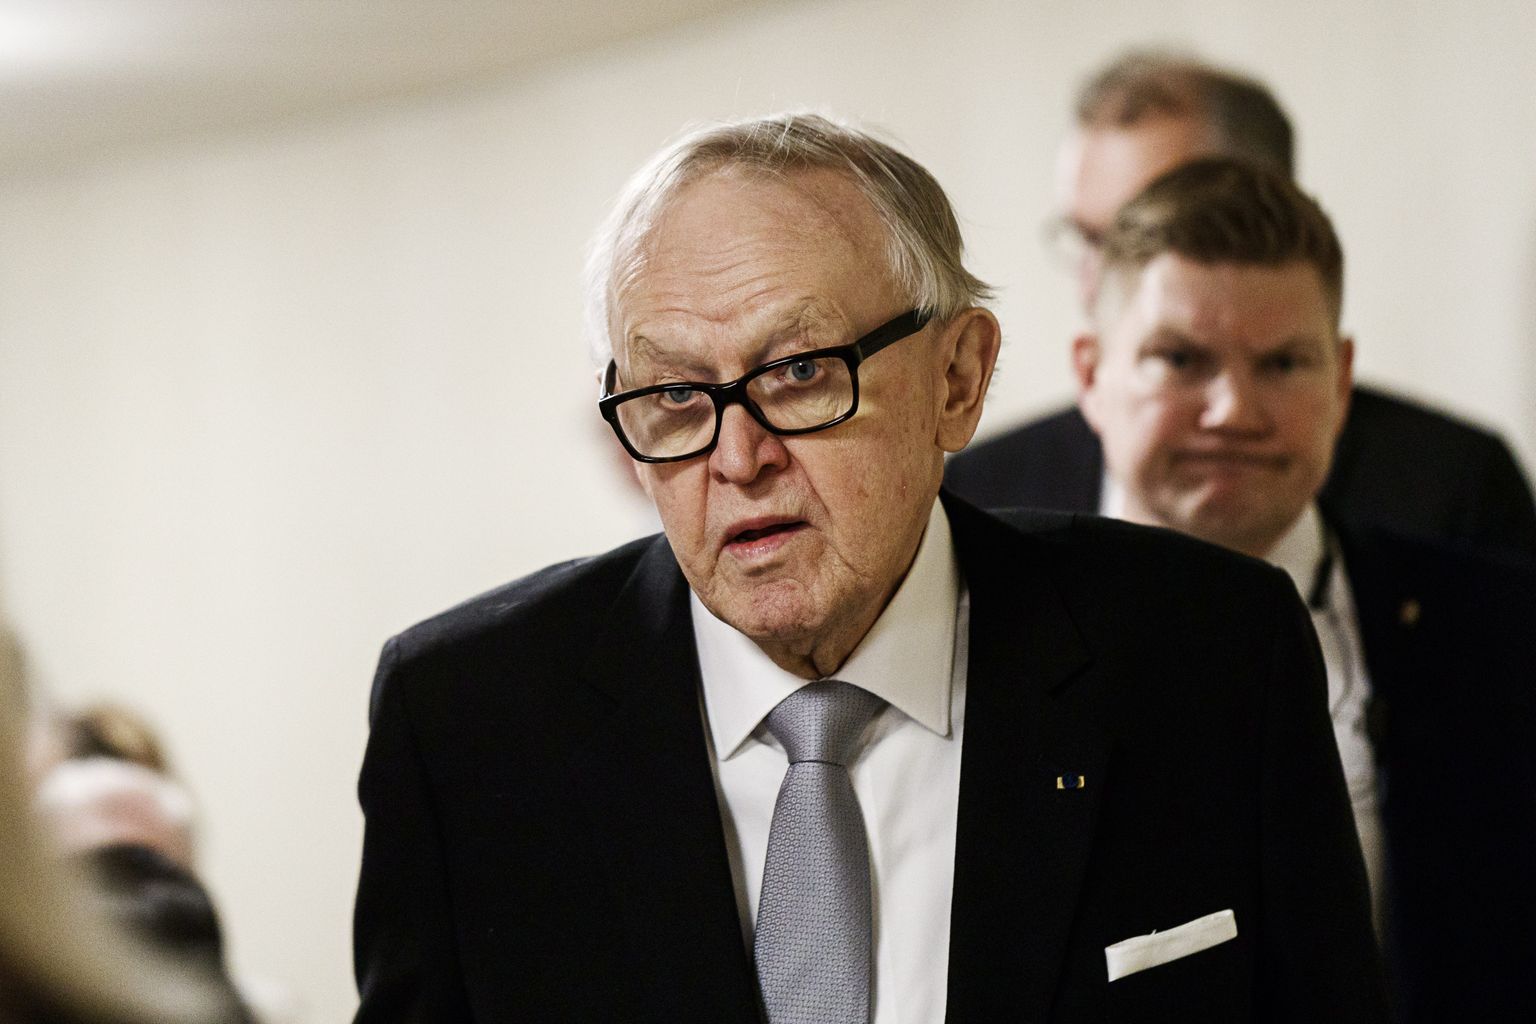 Soome endine president Martti Ahtisaari 2018. aastal.